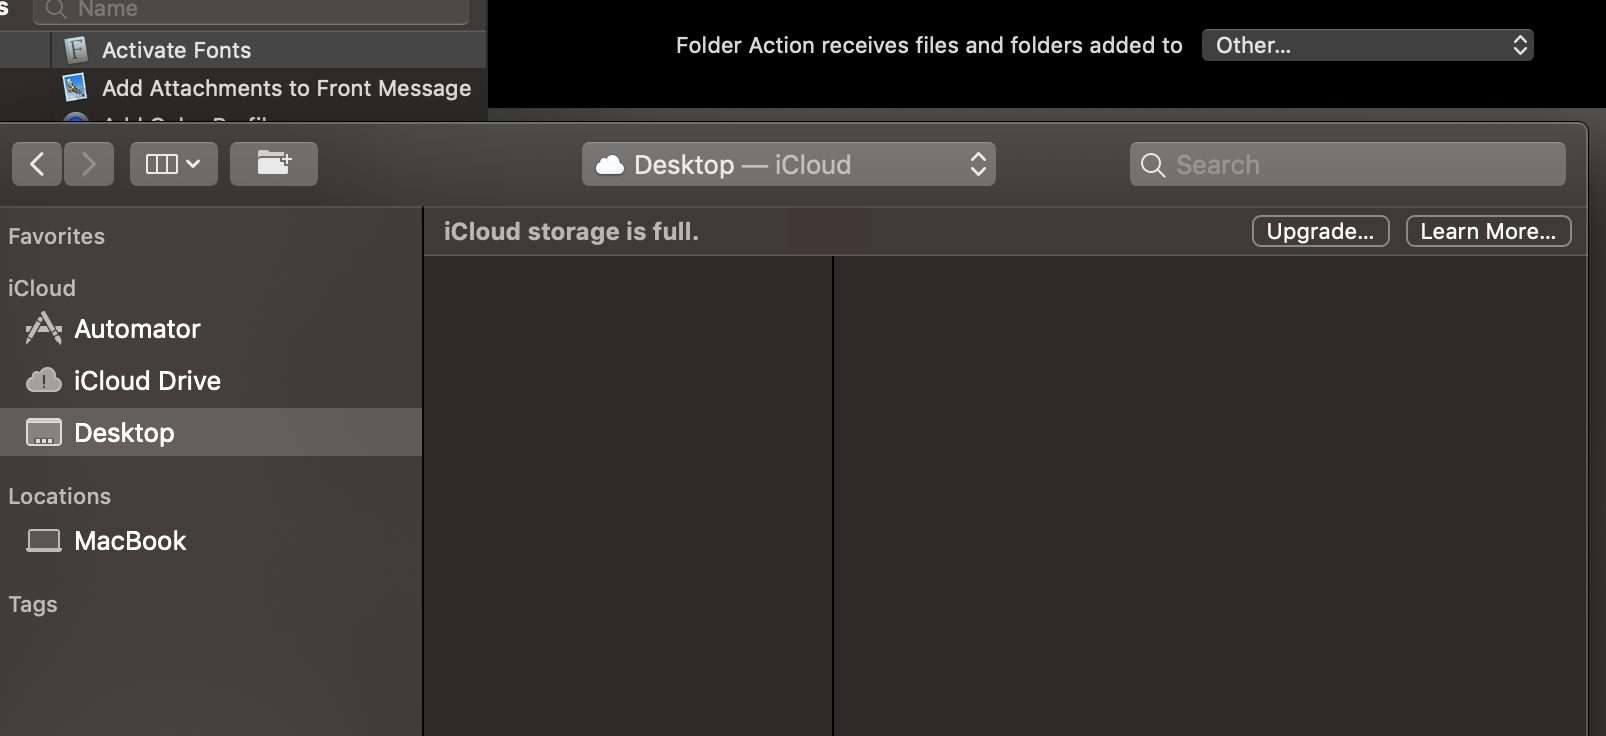 Choose desktop in the Folder Action